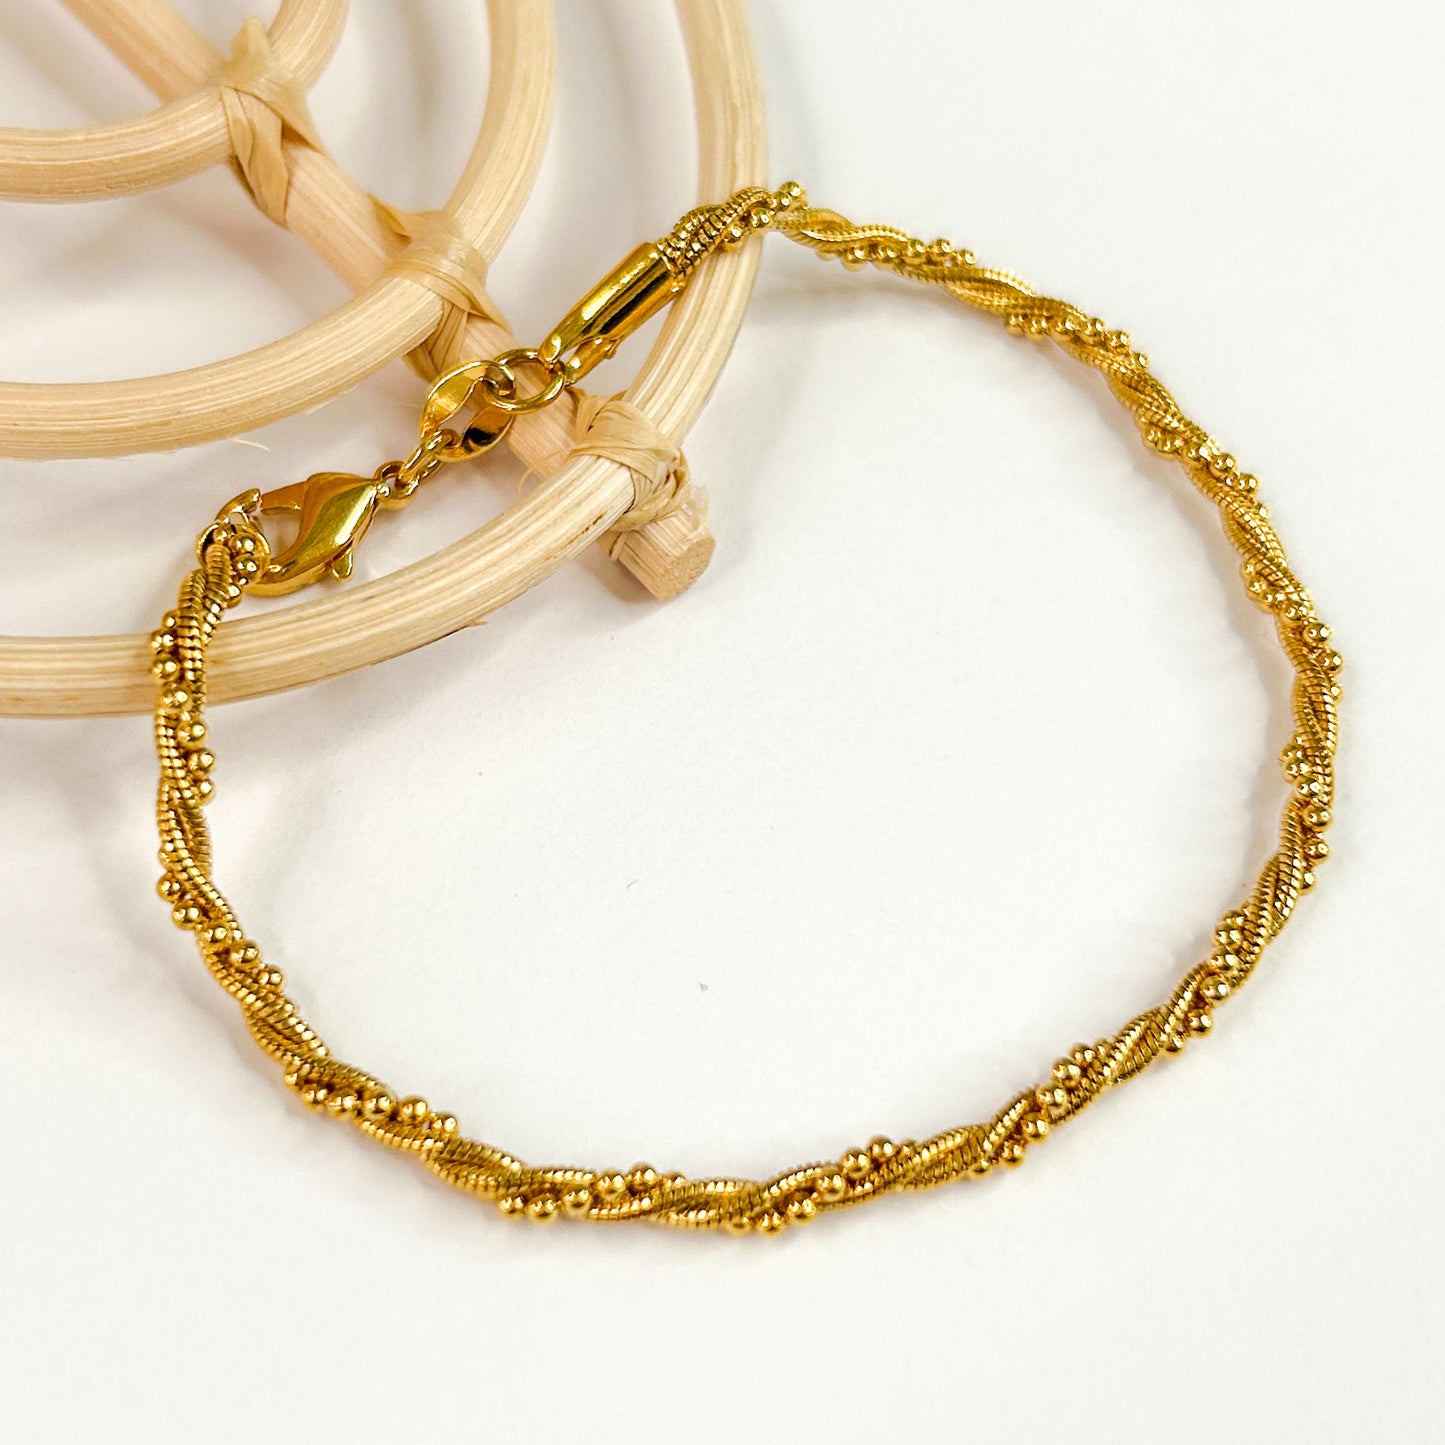 Rope Detail Bracelet - 18K Gold Filled